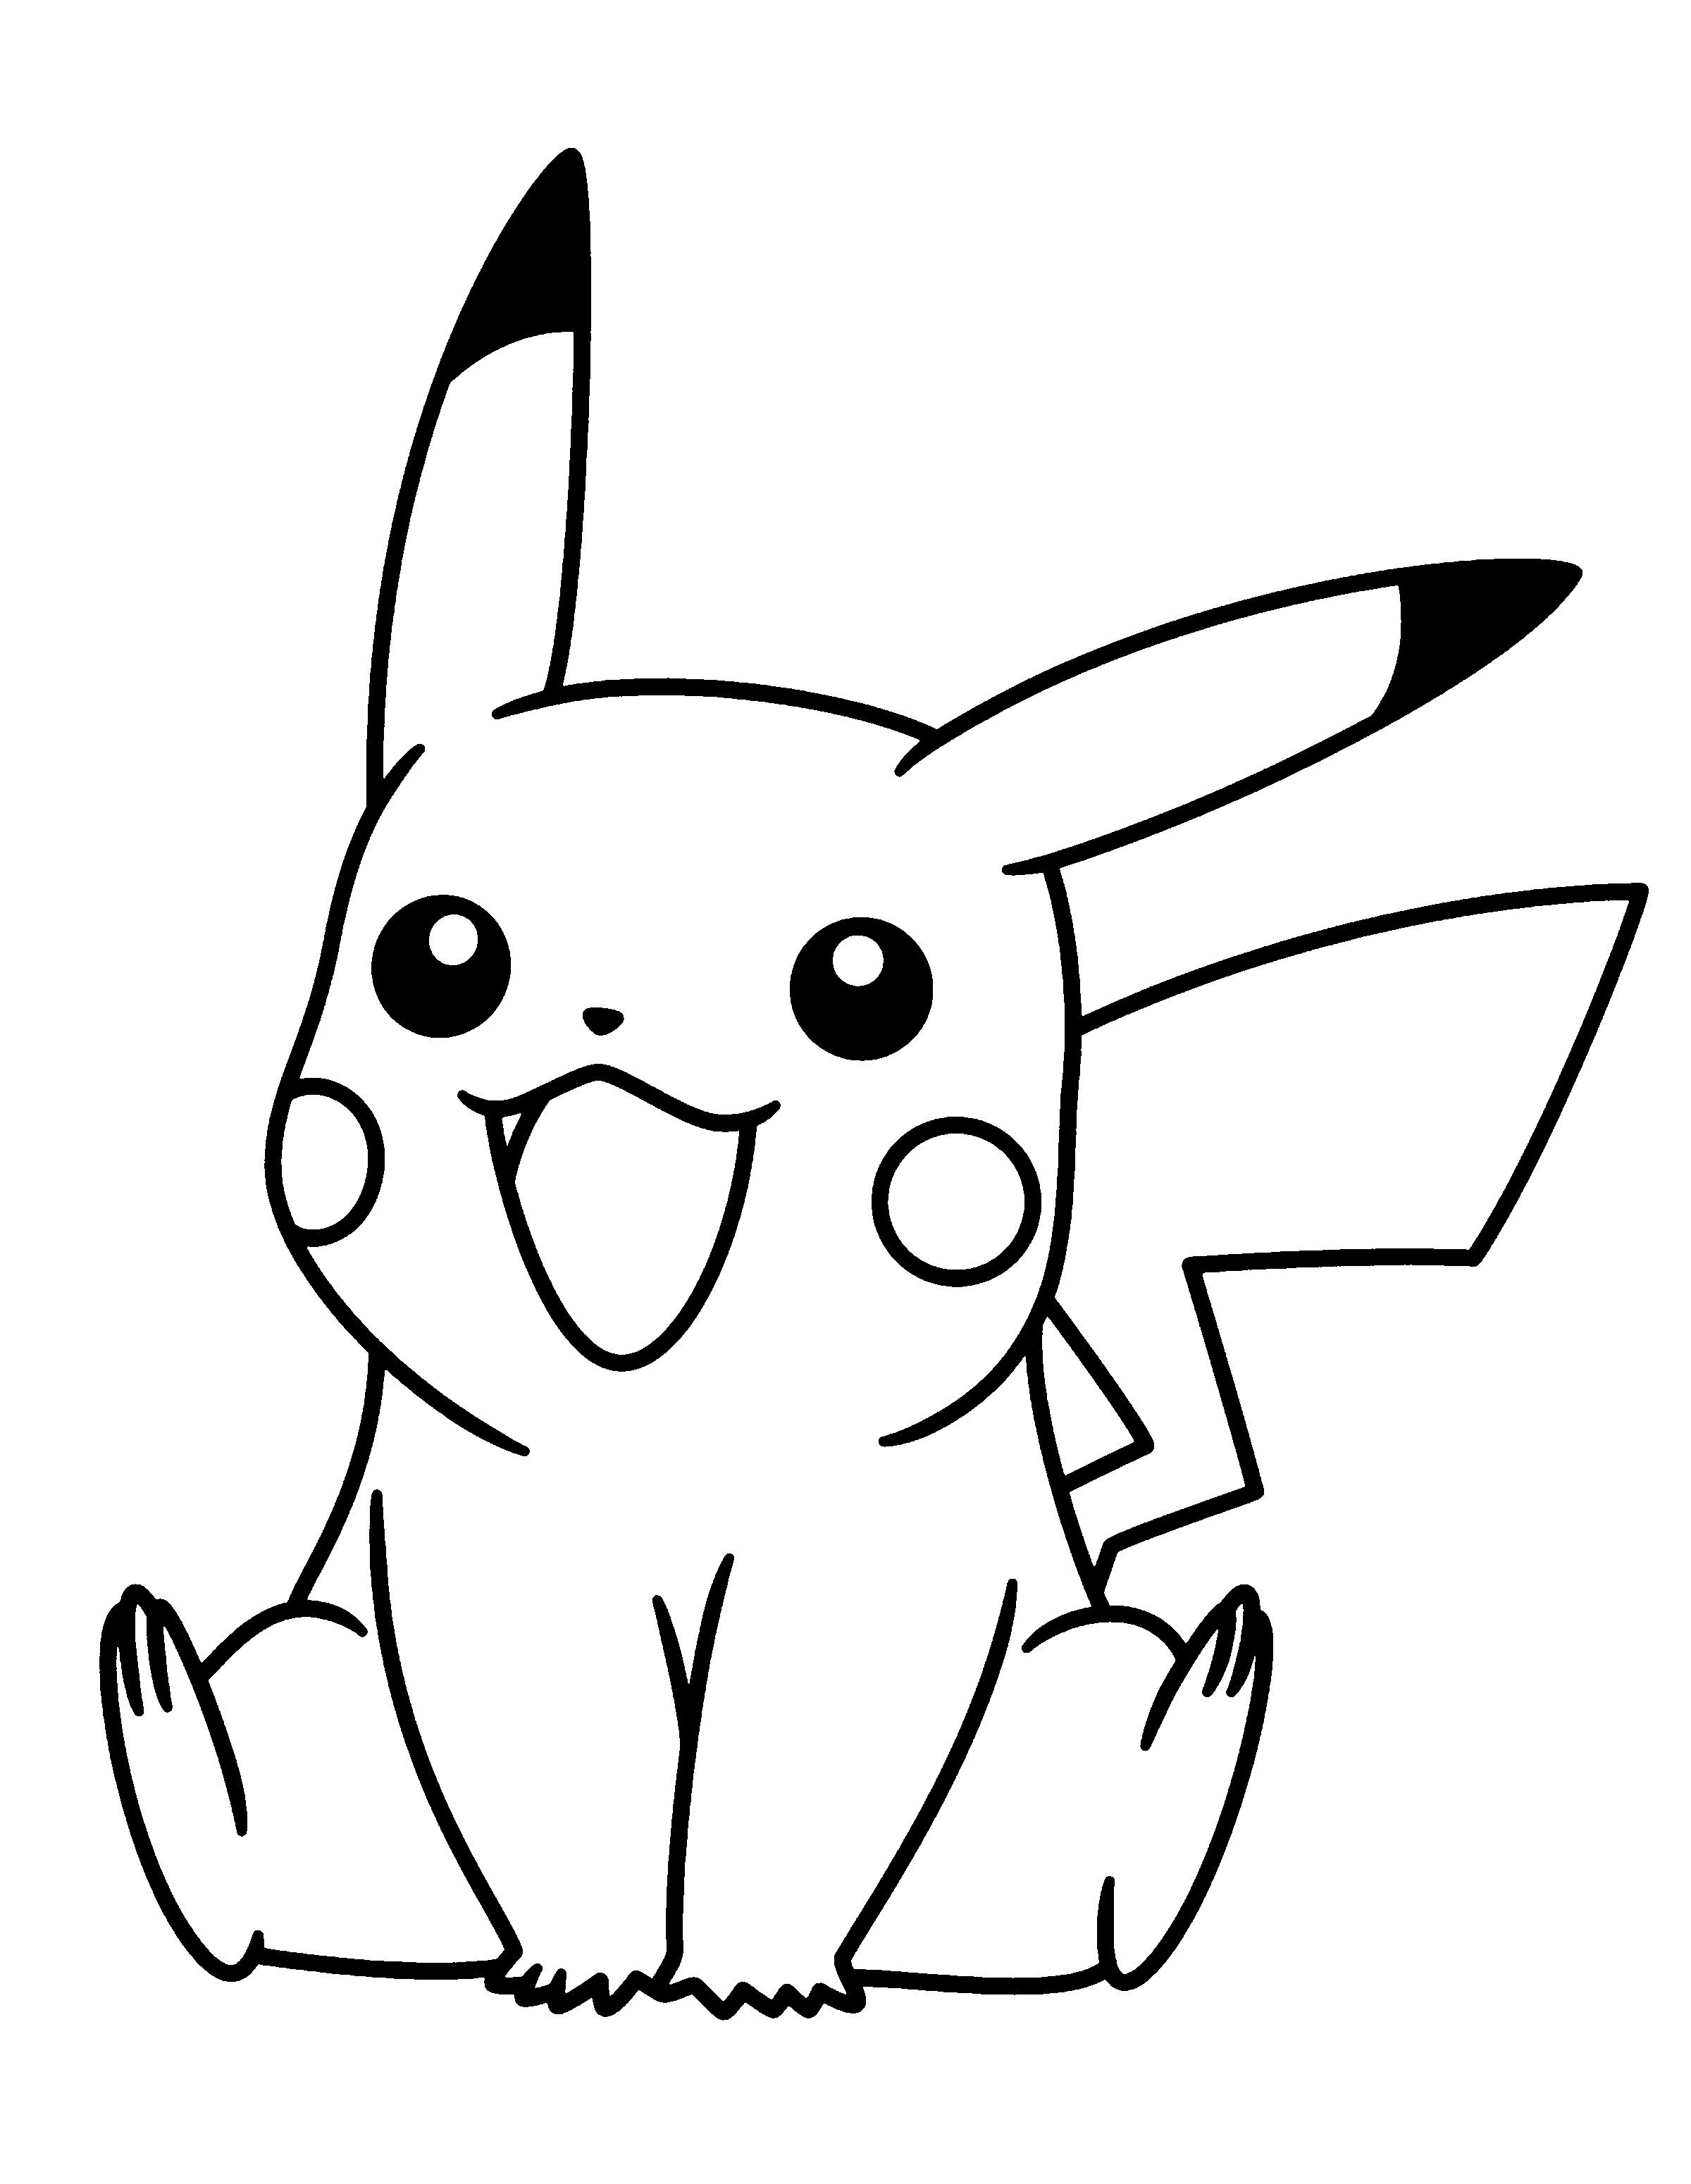 Xem Hơn 100 Ảnh Về Hình Vẽ Pikachu Cute - Daotaonec